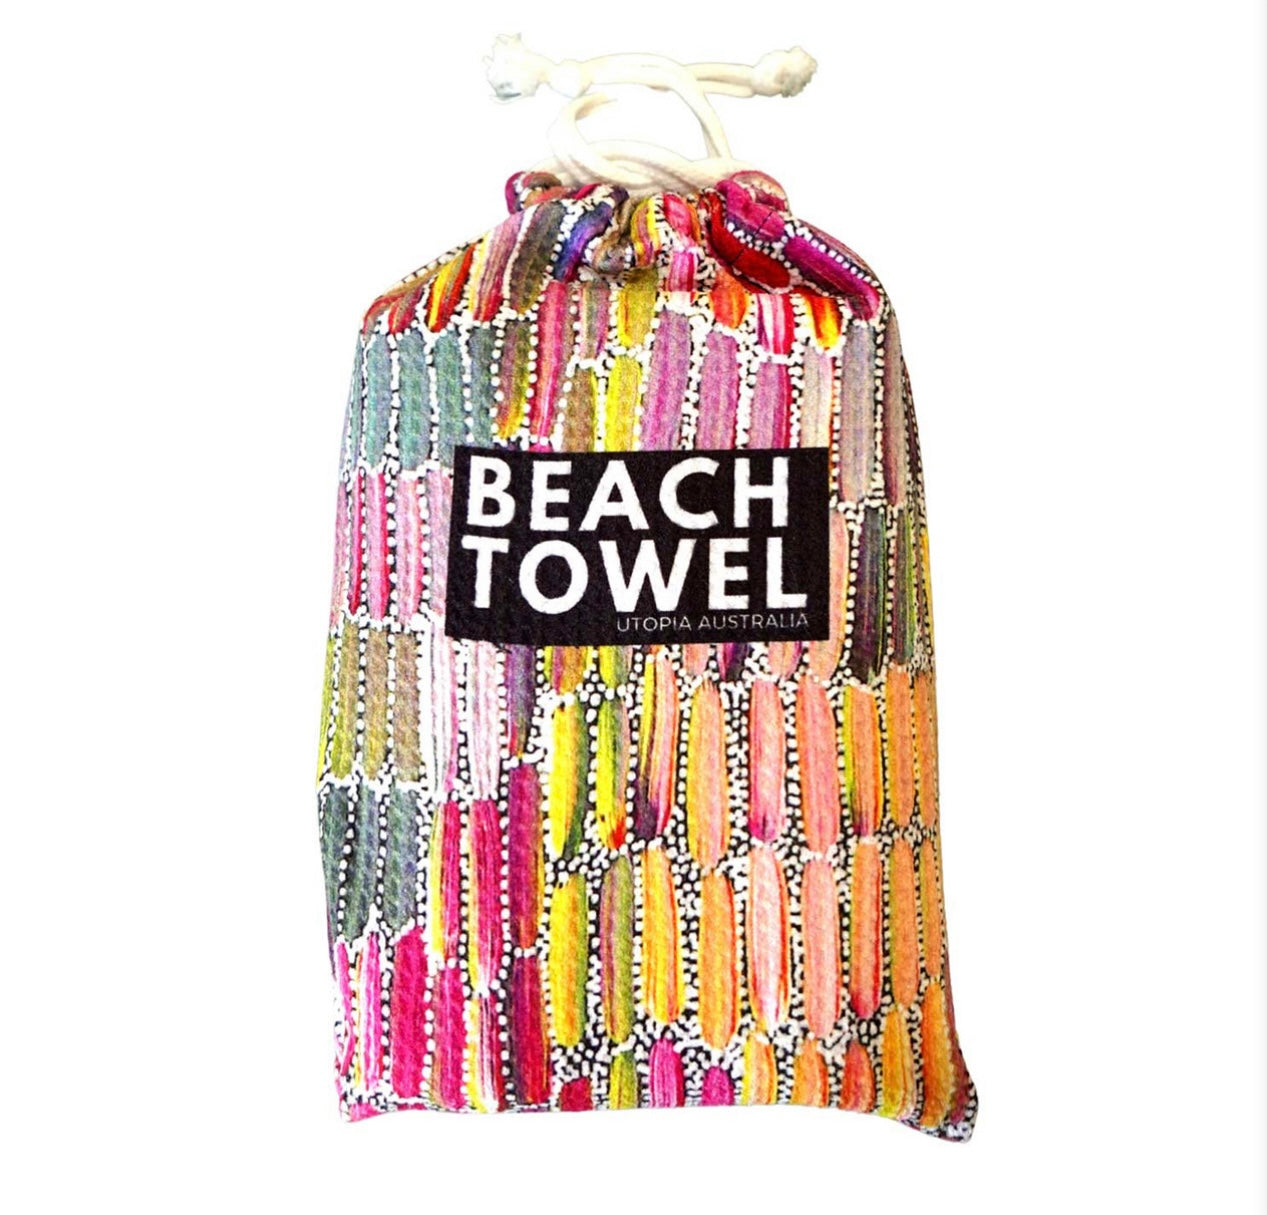 Beach Towel - Jeannie Mills Pwerle